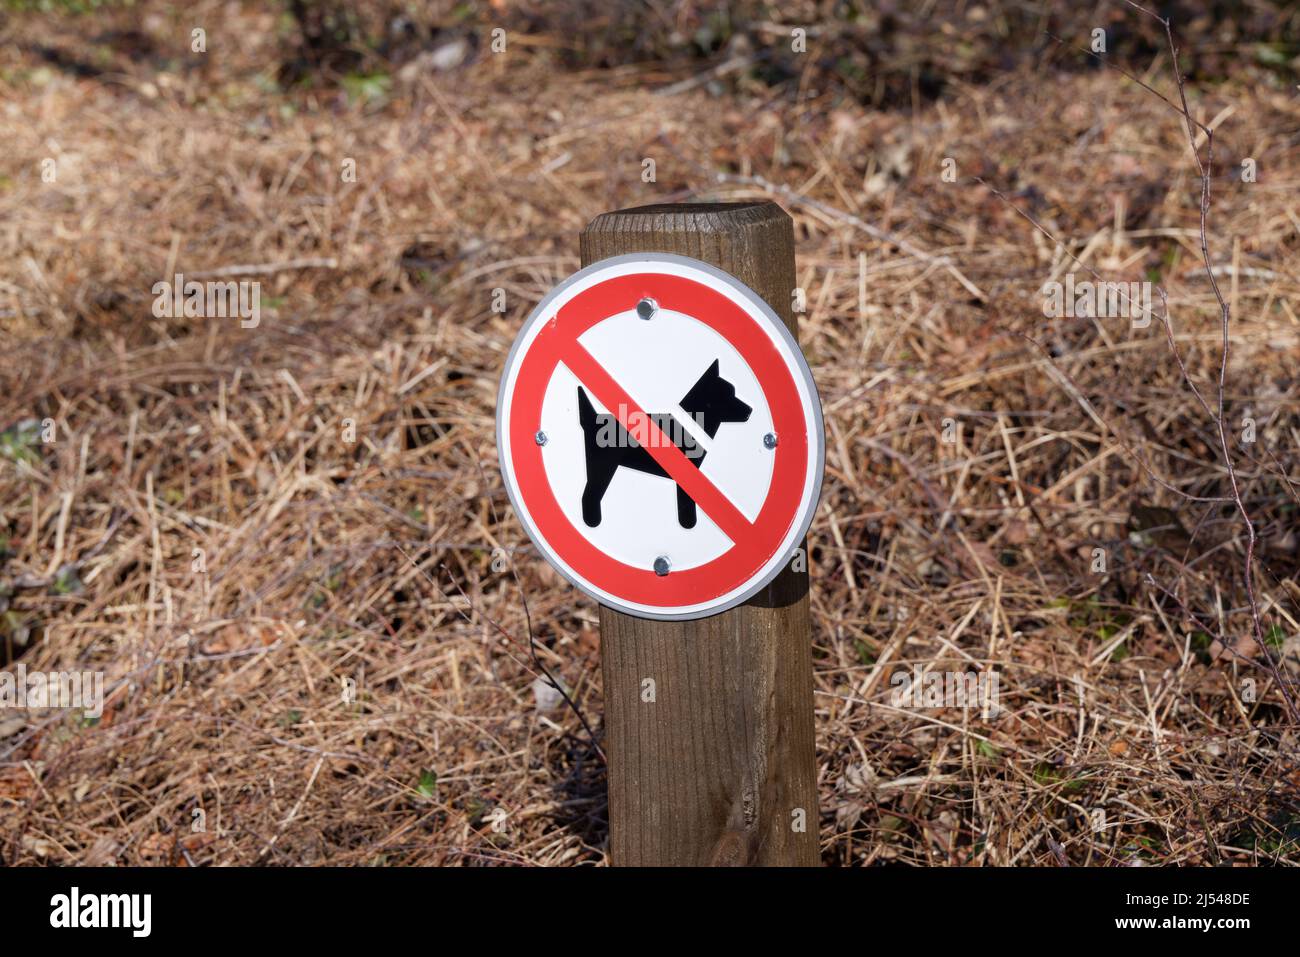 pas de zone de chien: rouge et blanc pas de signe de chien, les animaux ne sont pas autorisés dans cette zone en raison des excréments de chien, de la pollution, le soleil d'automne Banque D'Images